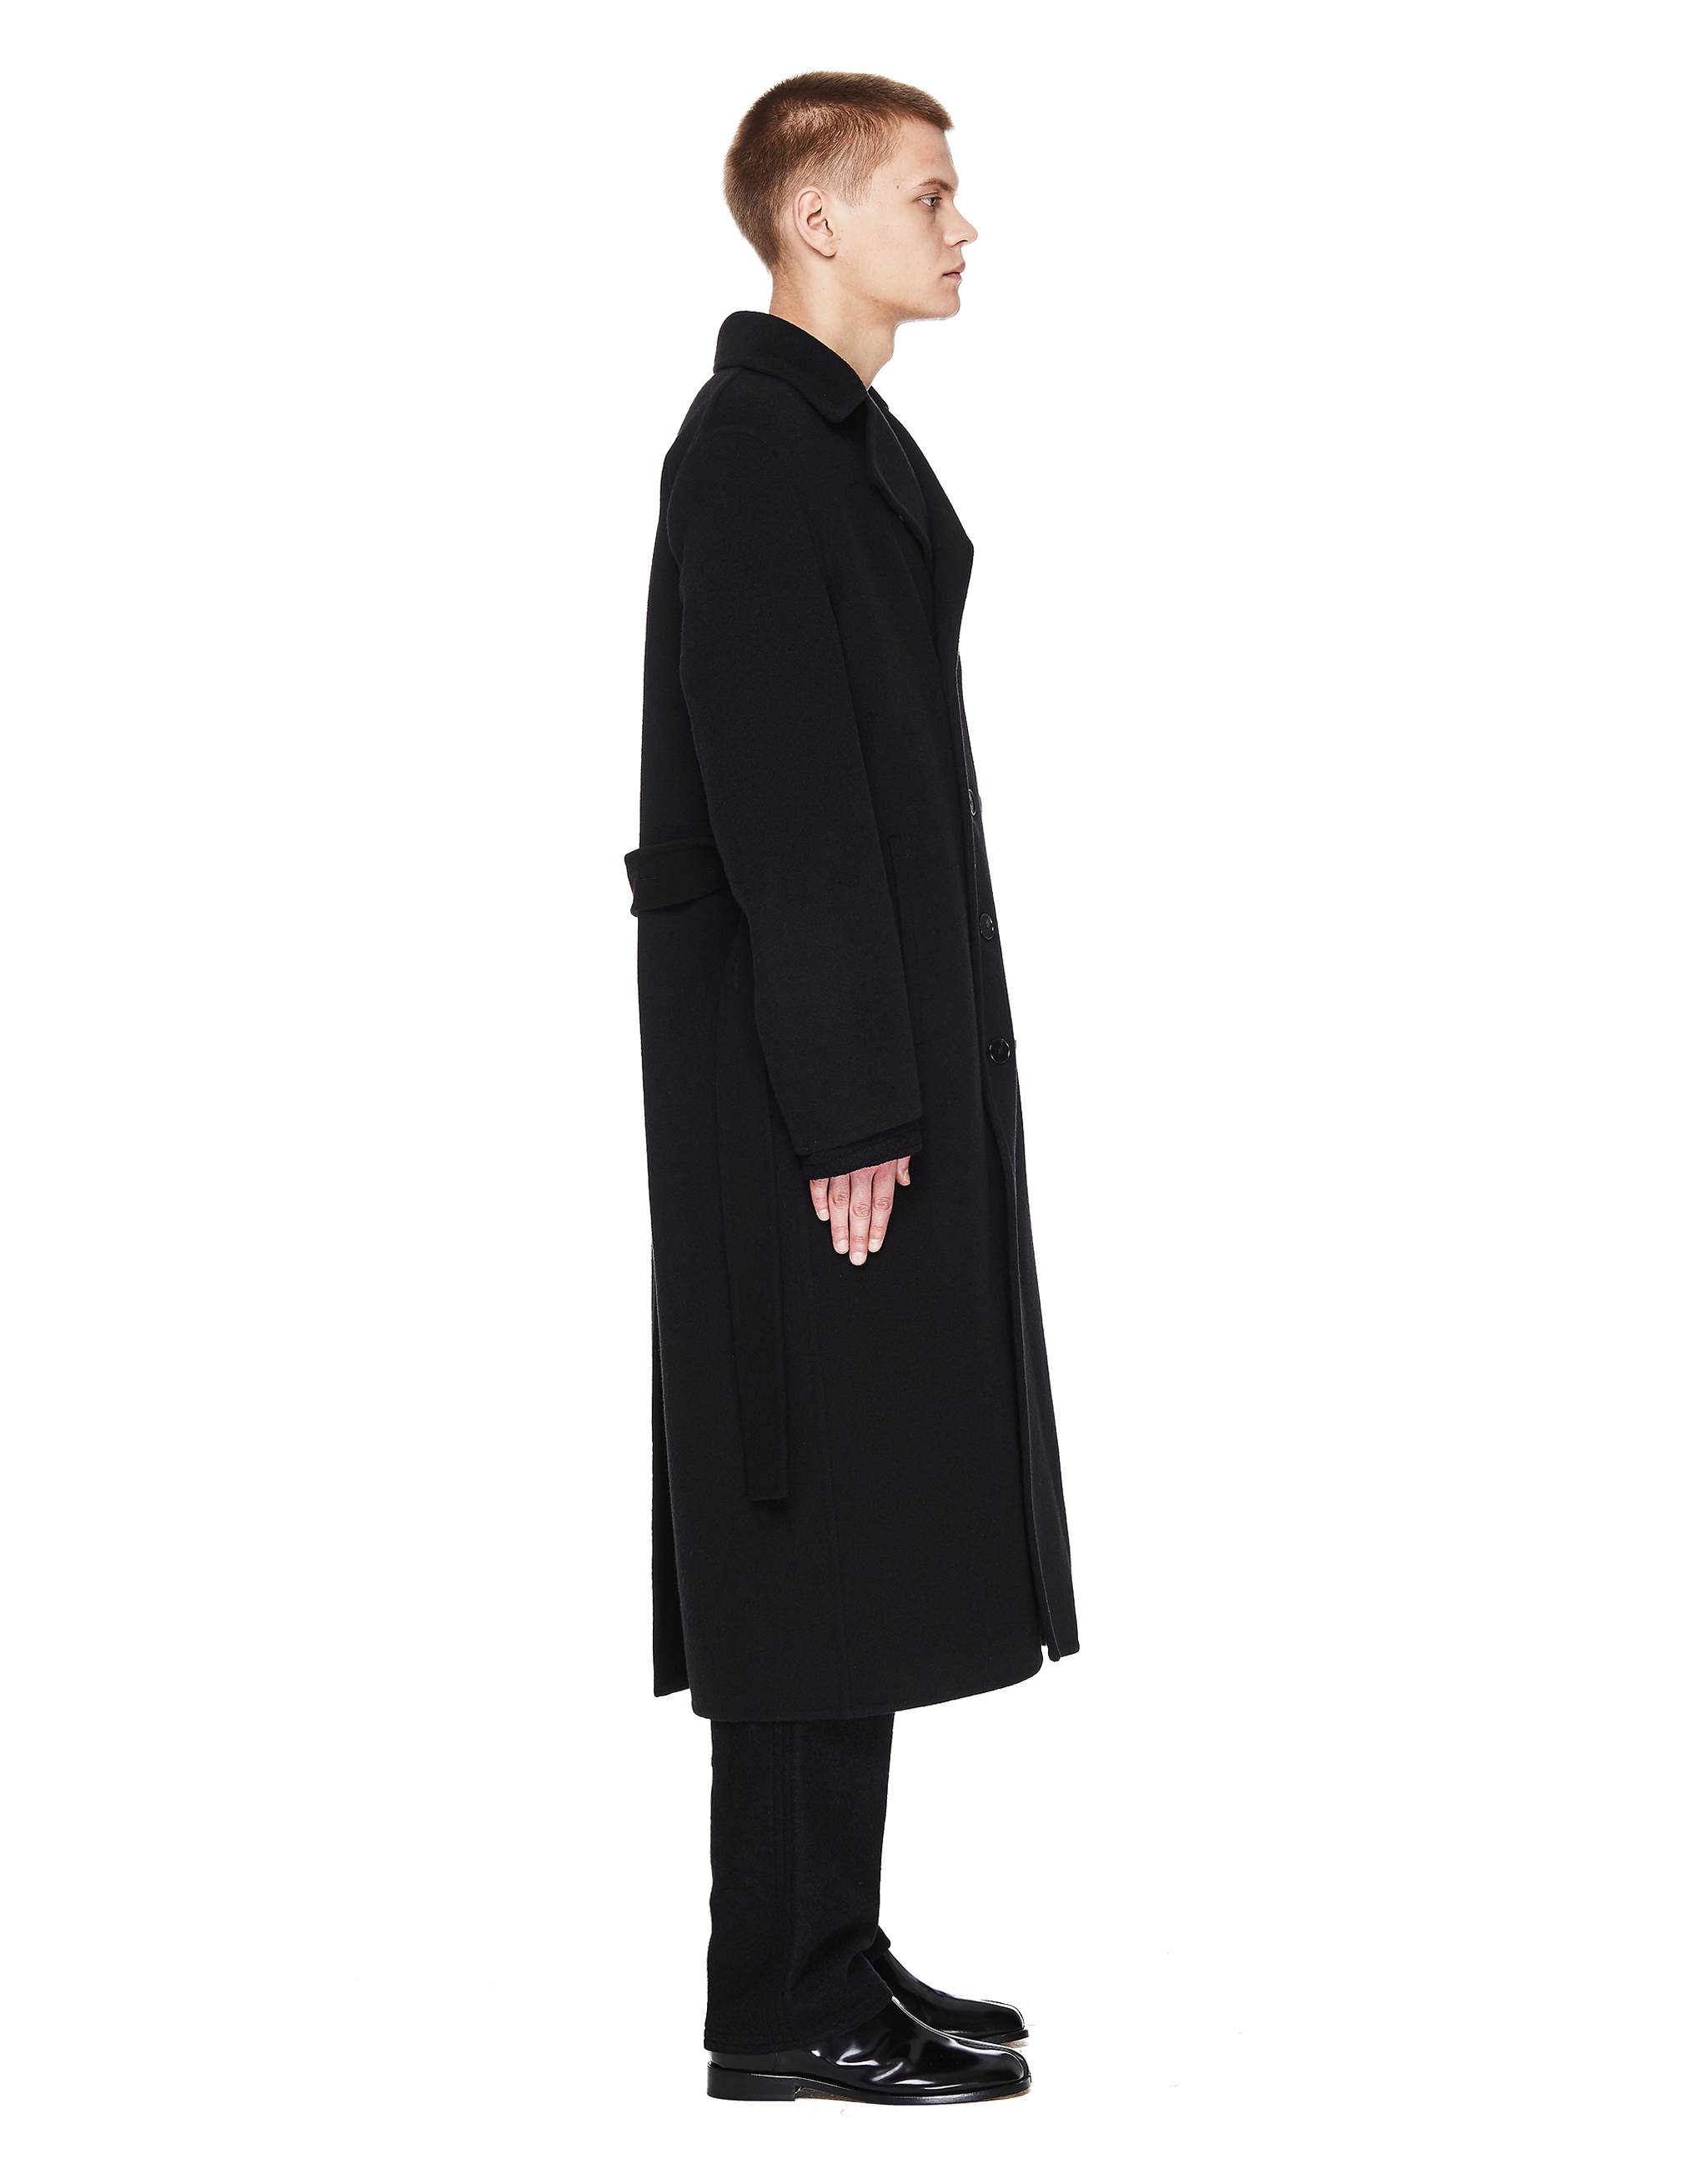 Черное кашемировое пальто с поясом - Jil Sander JSMR120103/MR100103/001 Фото 2